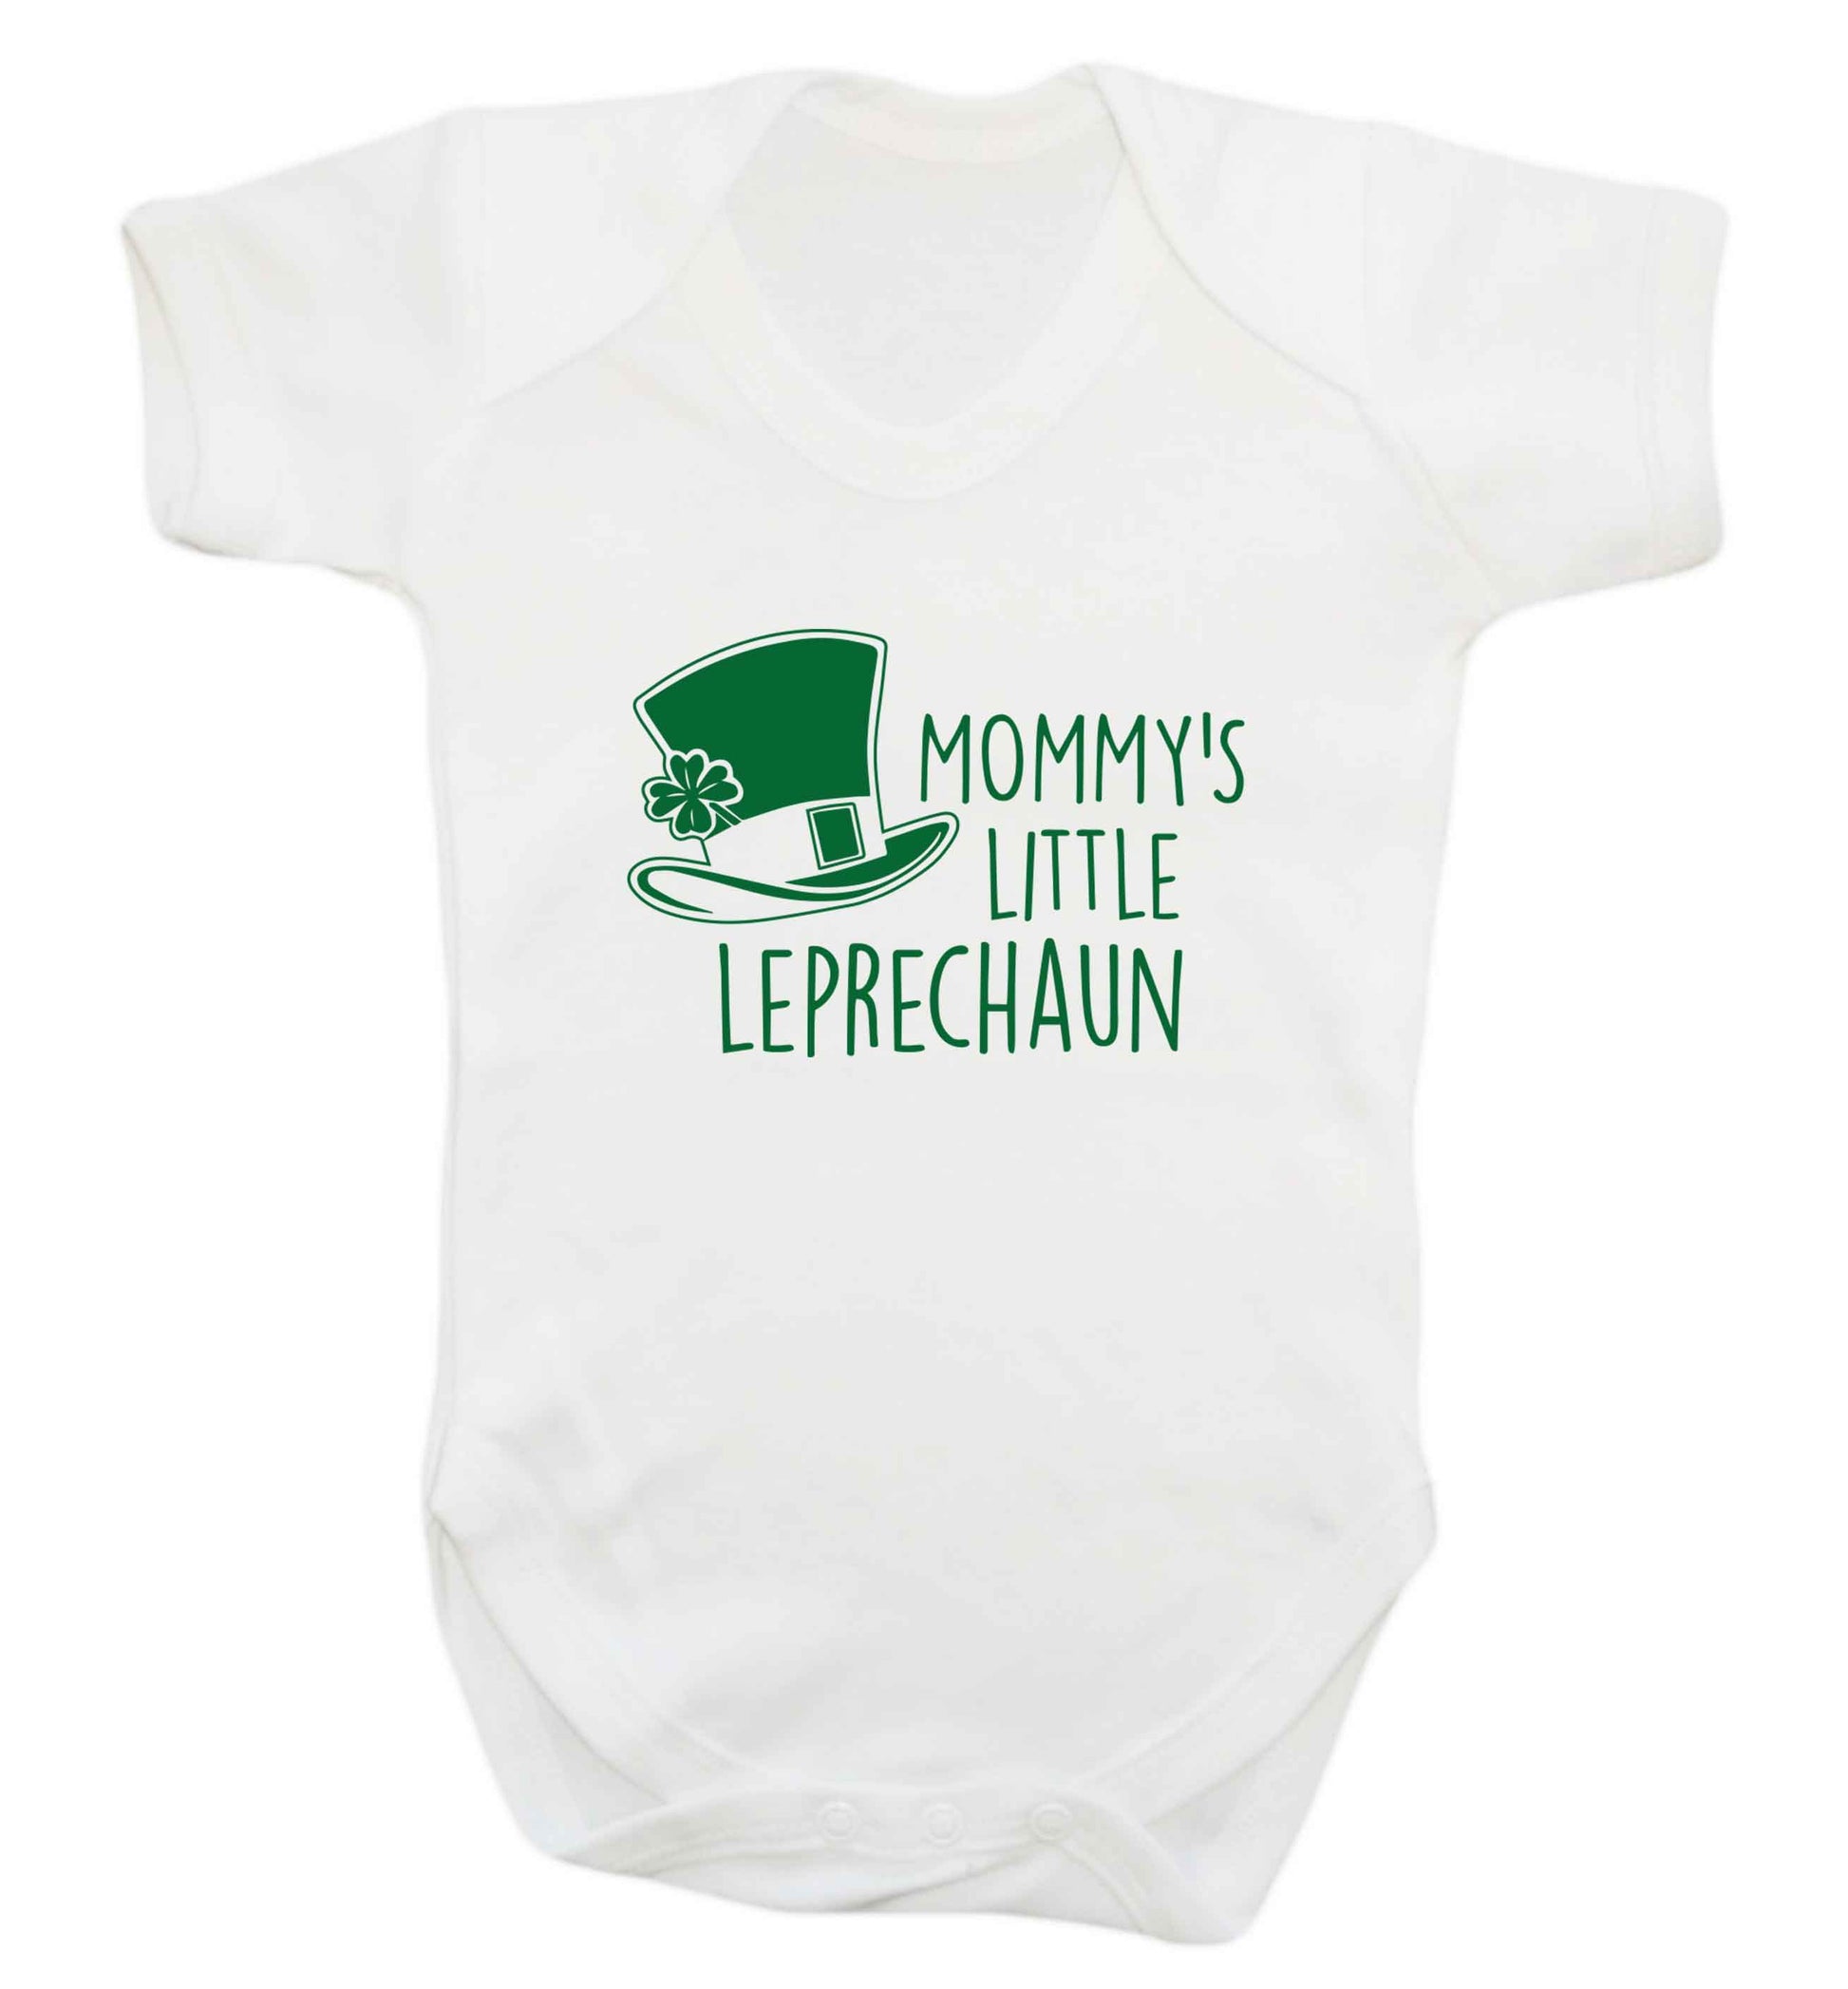 Mommy's little leprechaun baby vest white 18-24 months